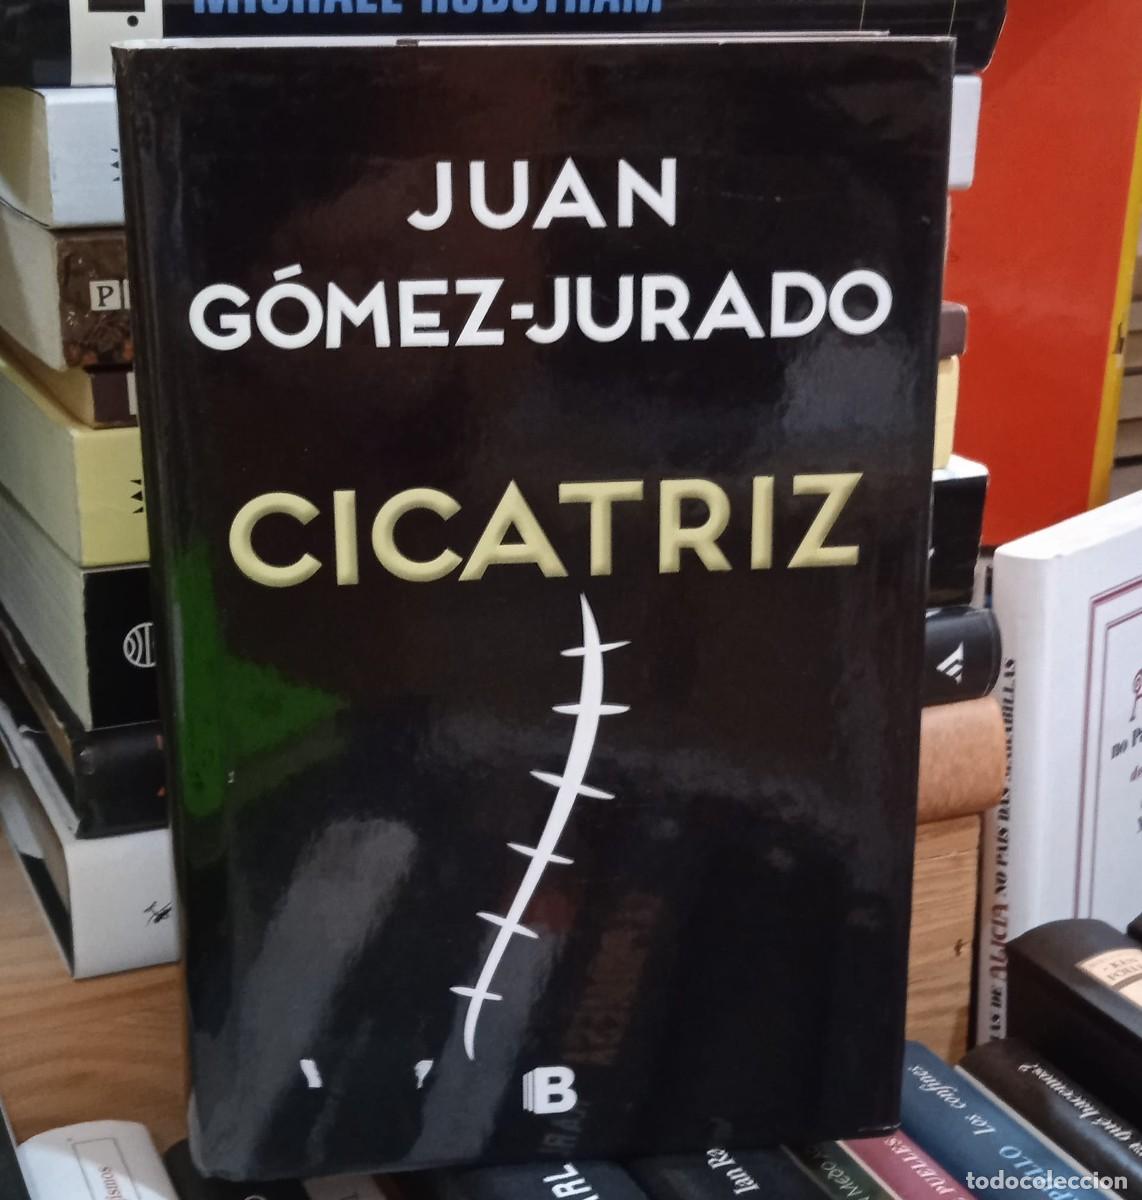 Cicatriz de Juan Gómez-Jurado 